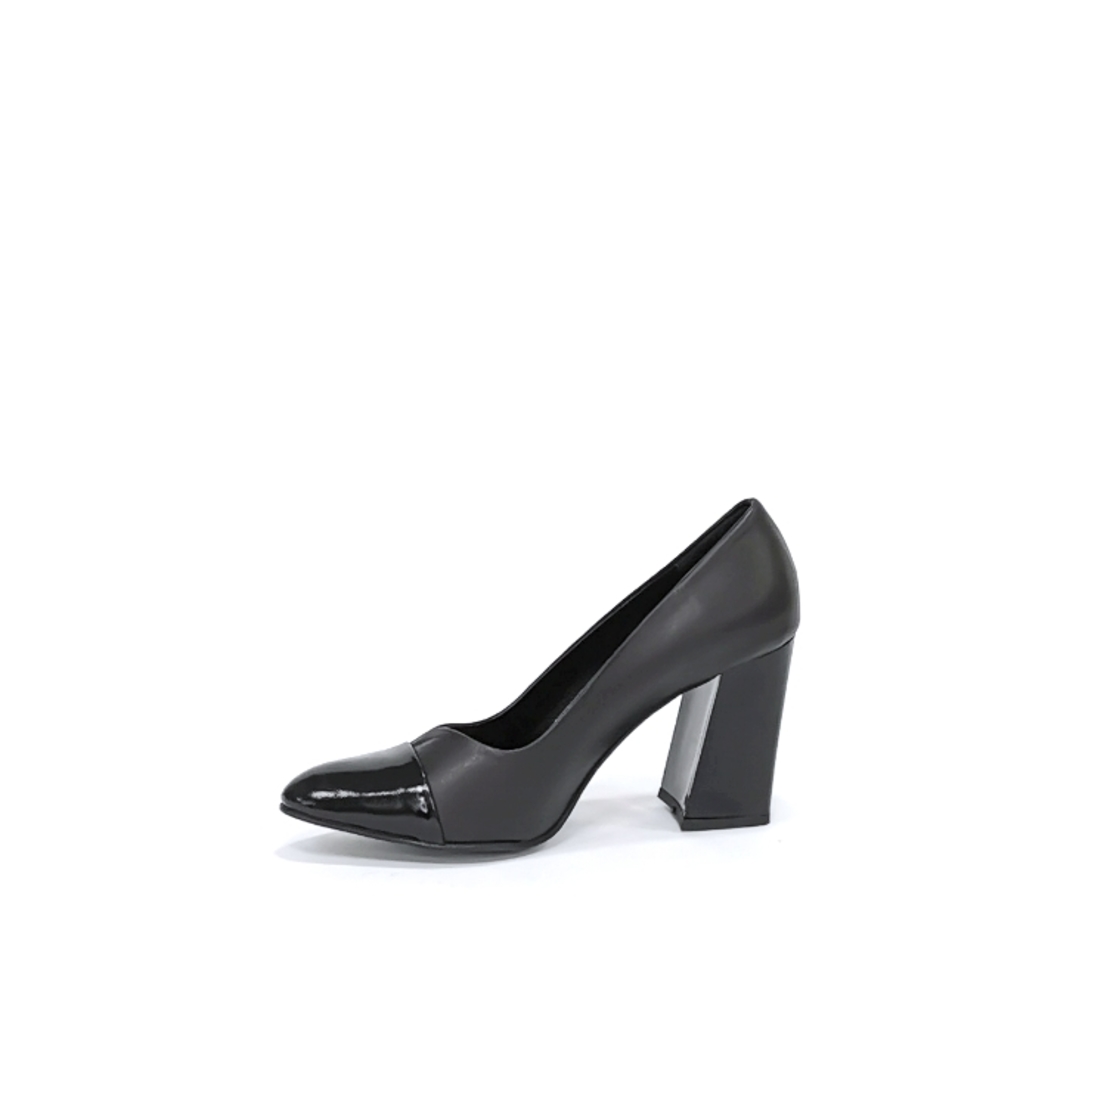 Женские элегантные туфли из натуральной кожи черного цвета/7702